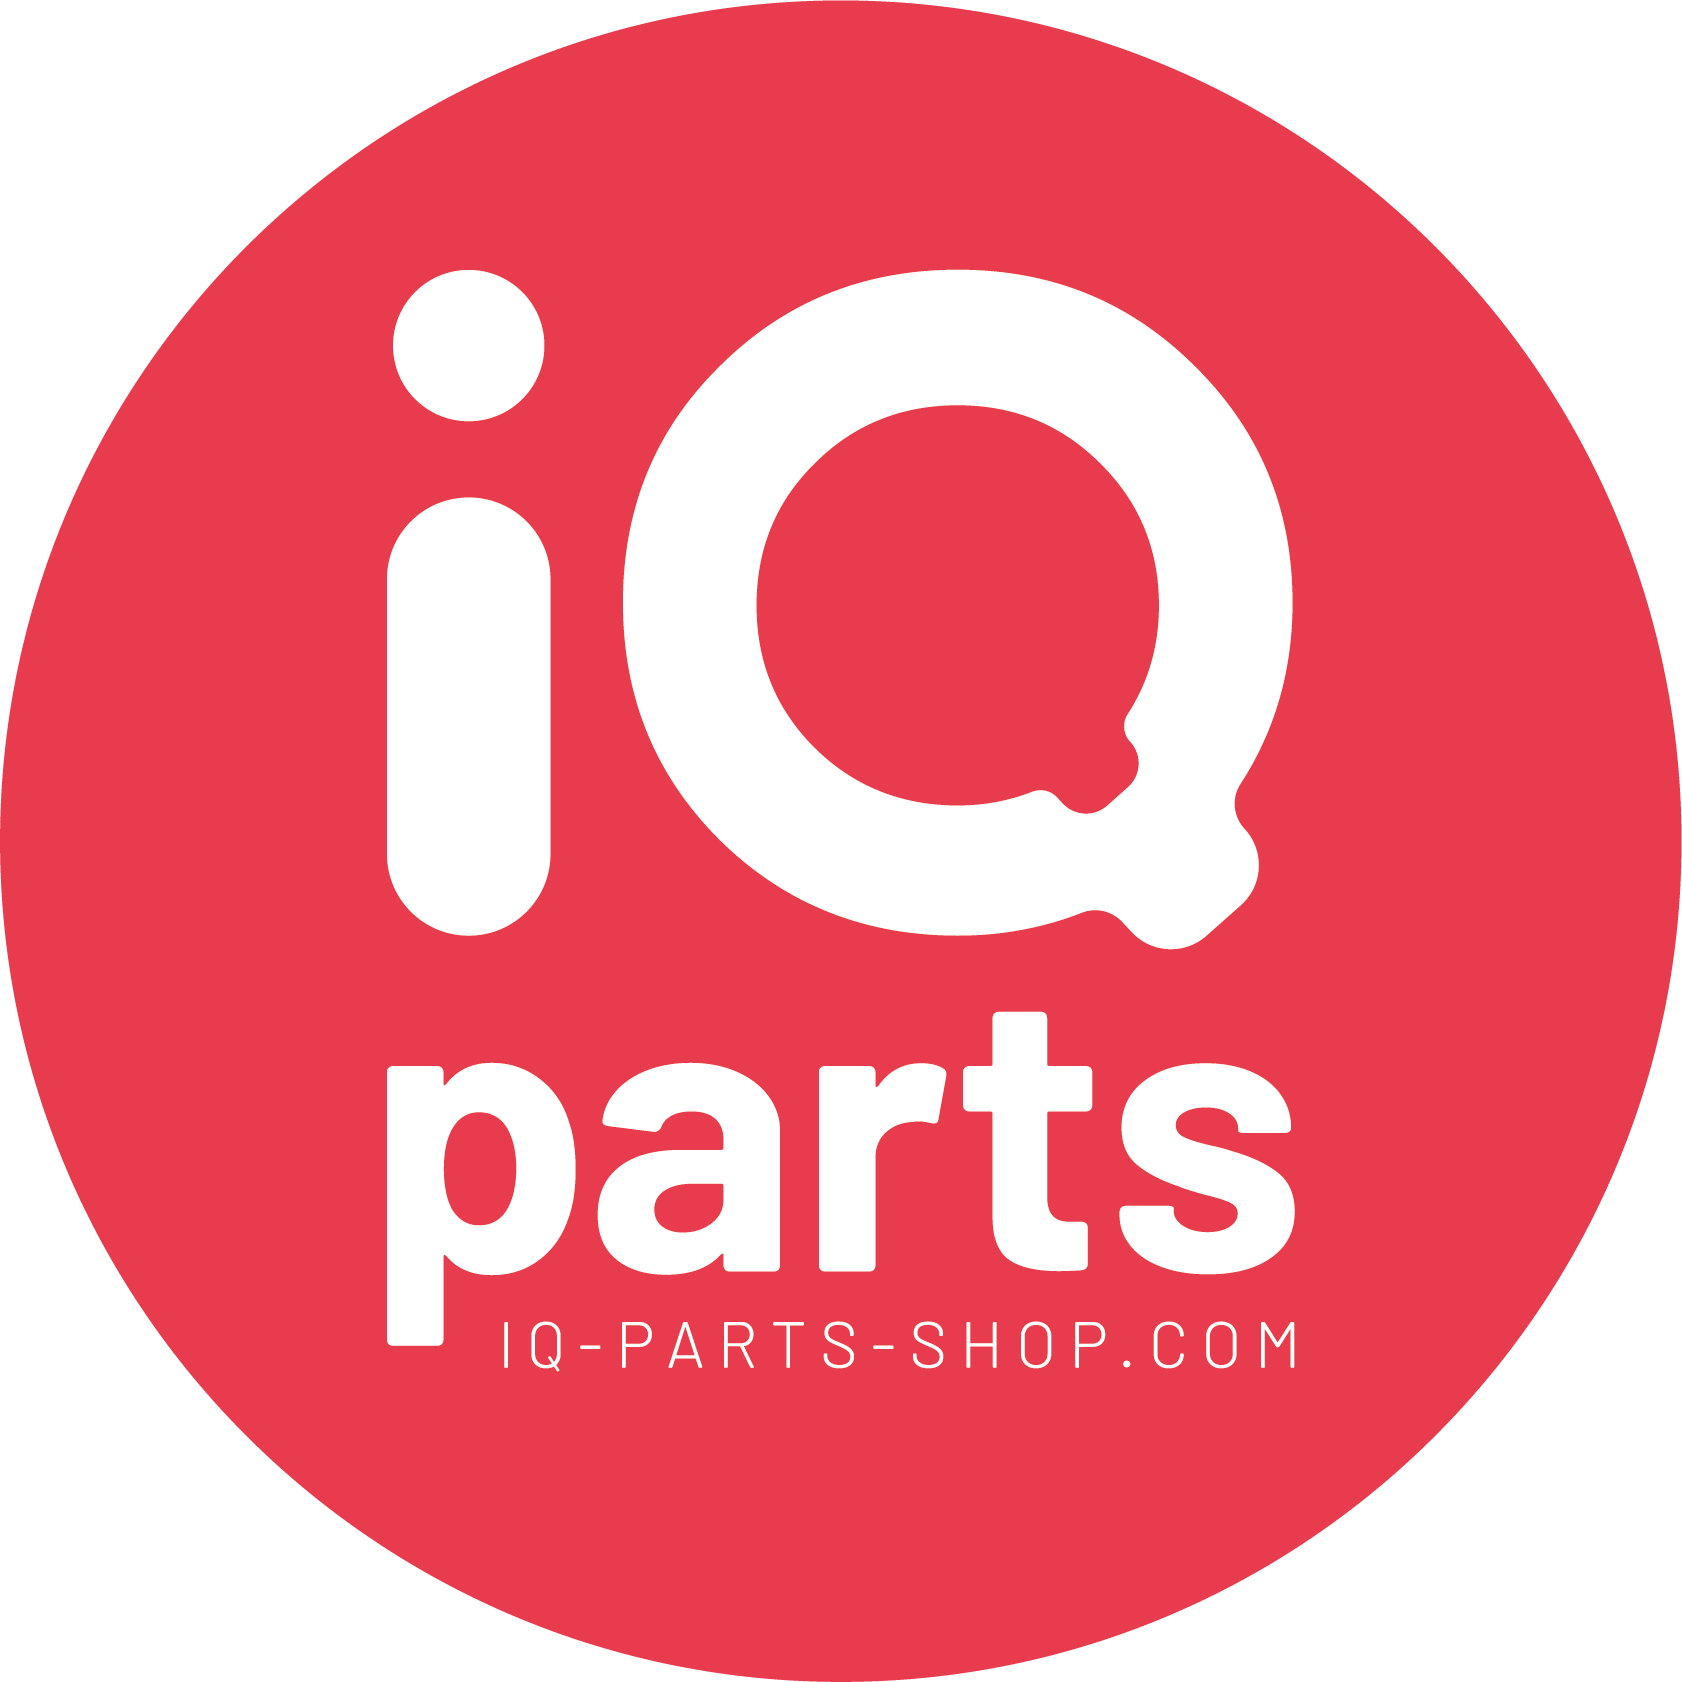 www.iq-parts-shop.com